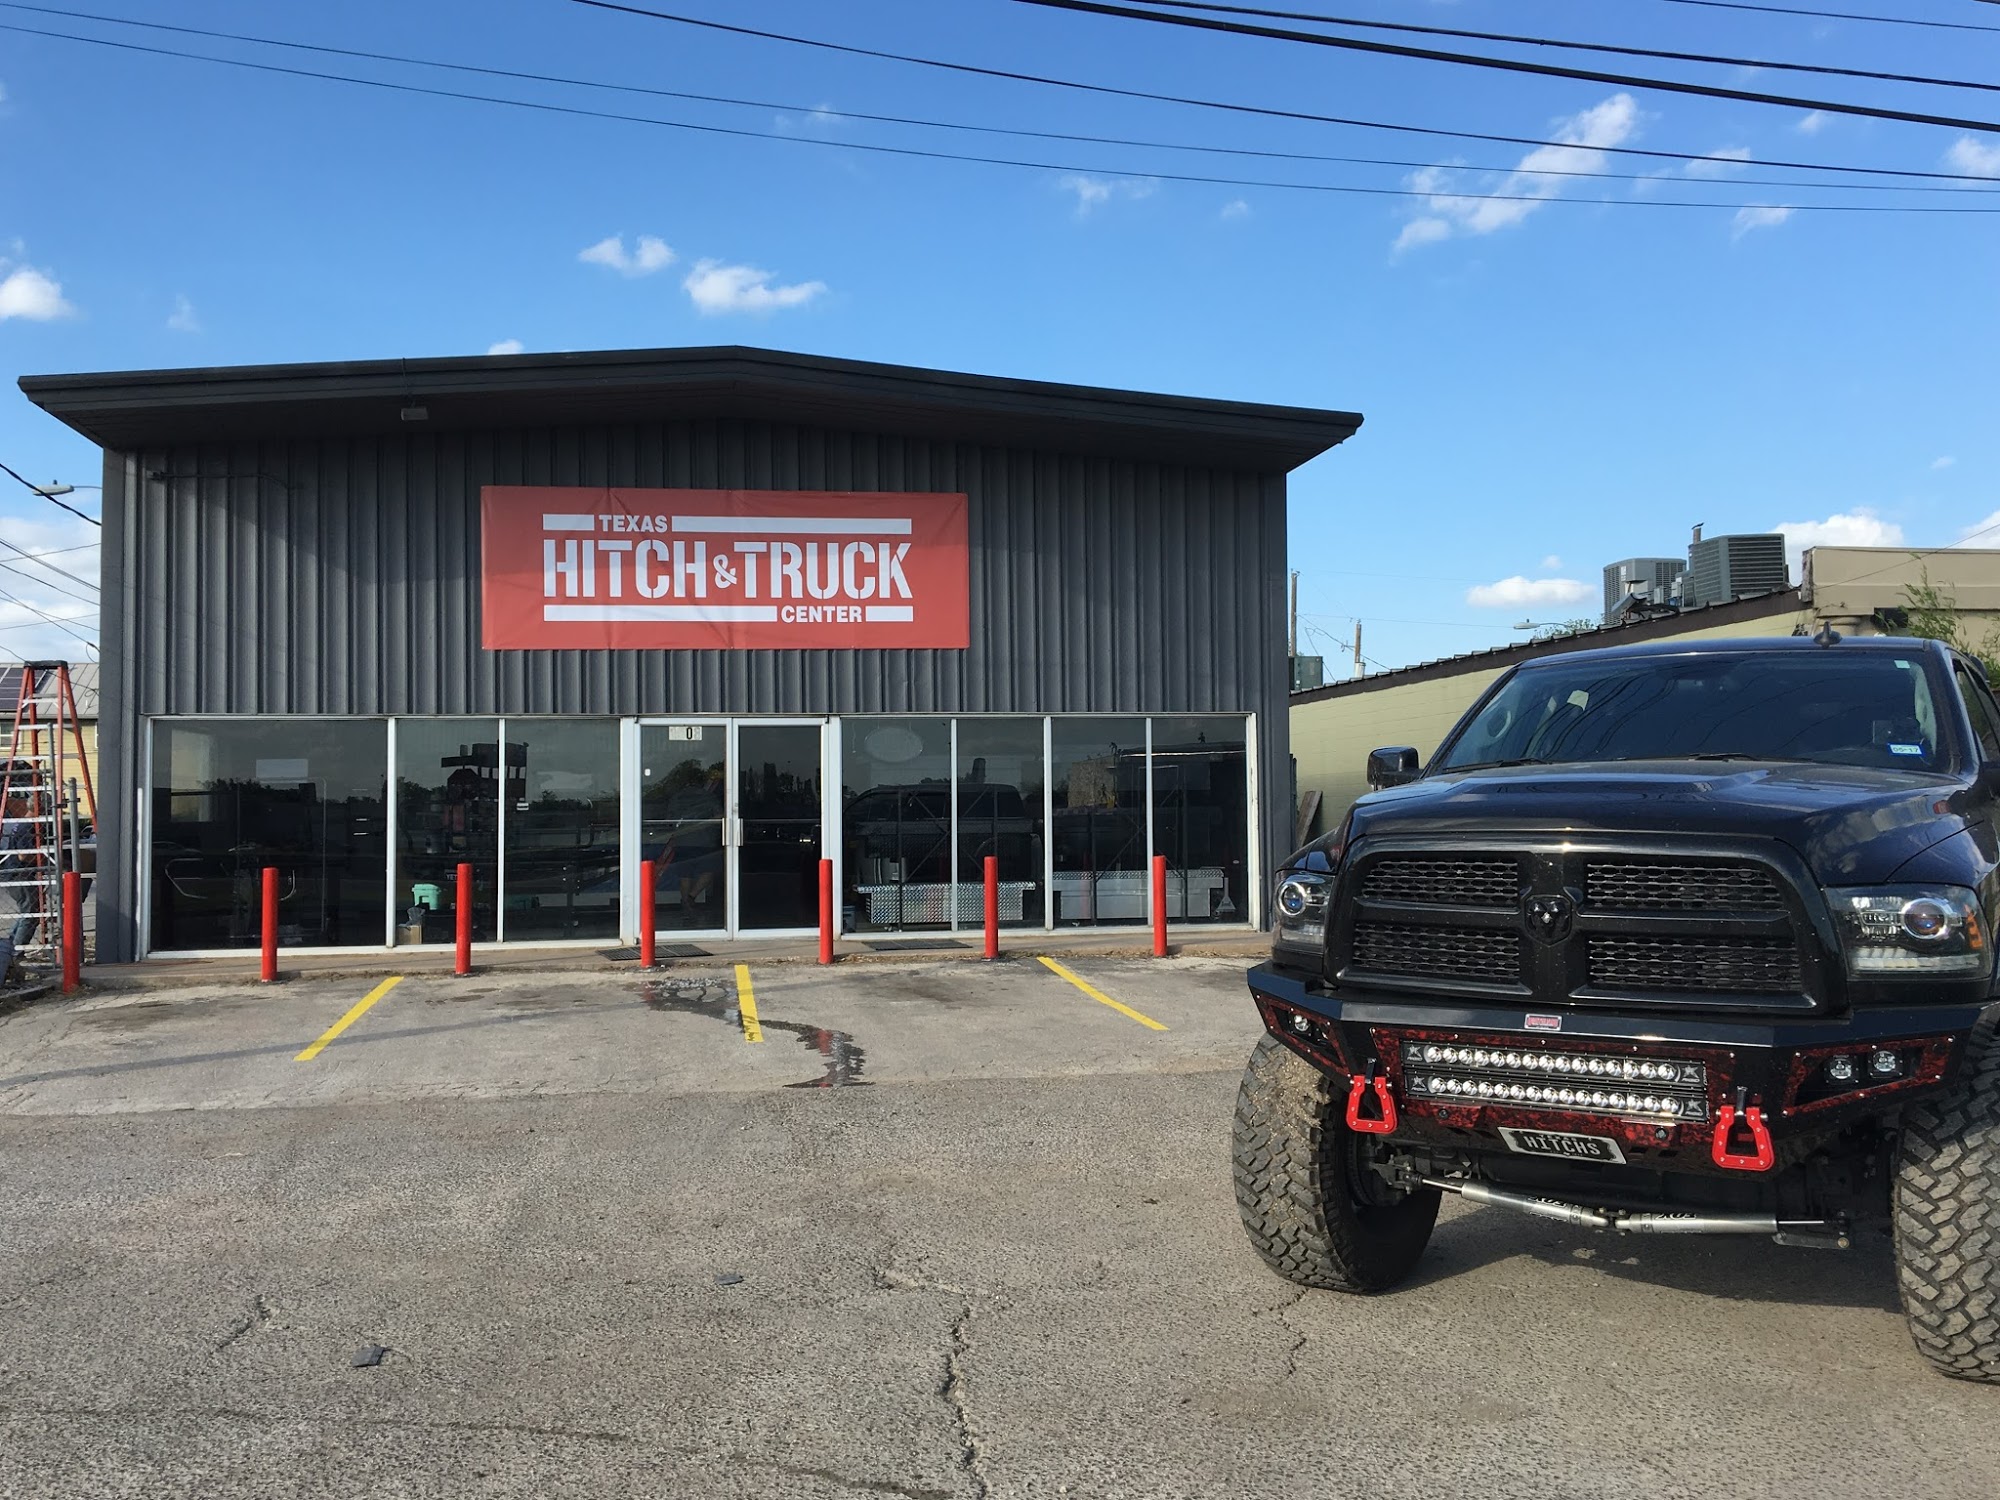 Texas Hitch & Truck Center